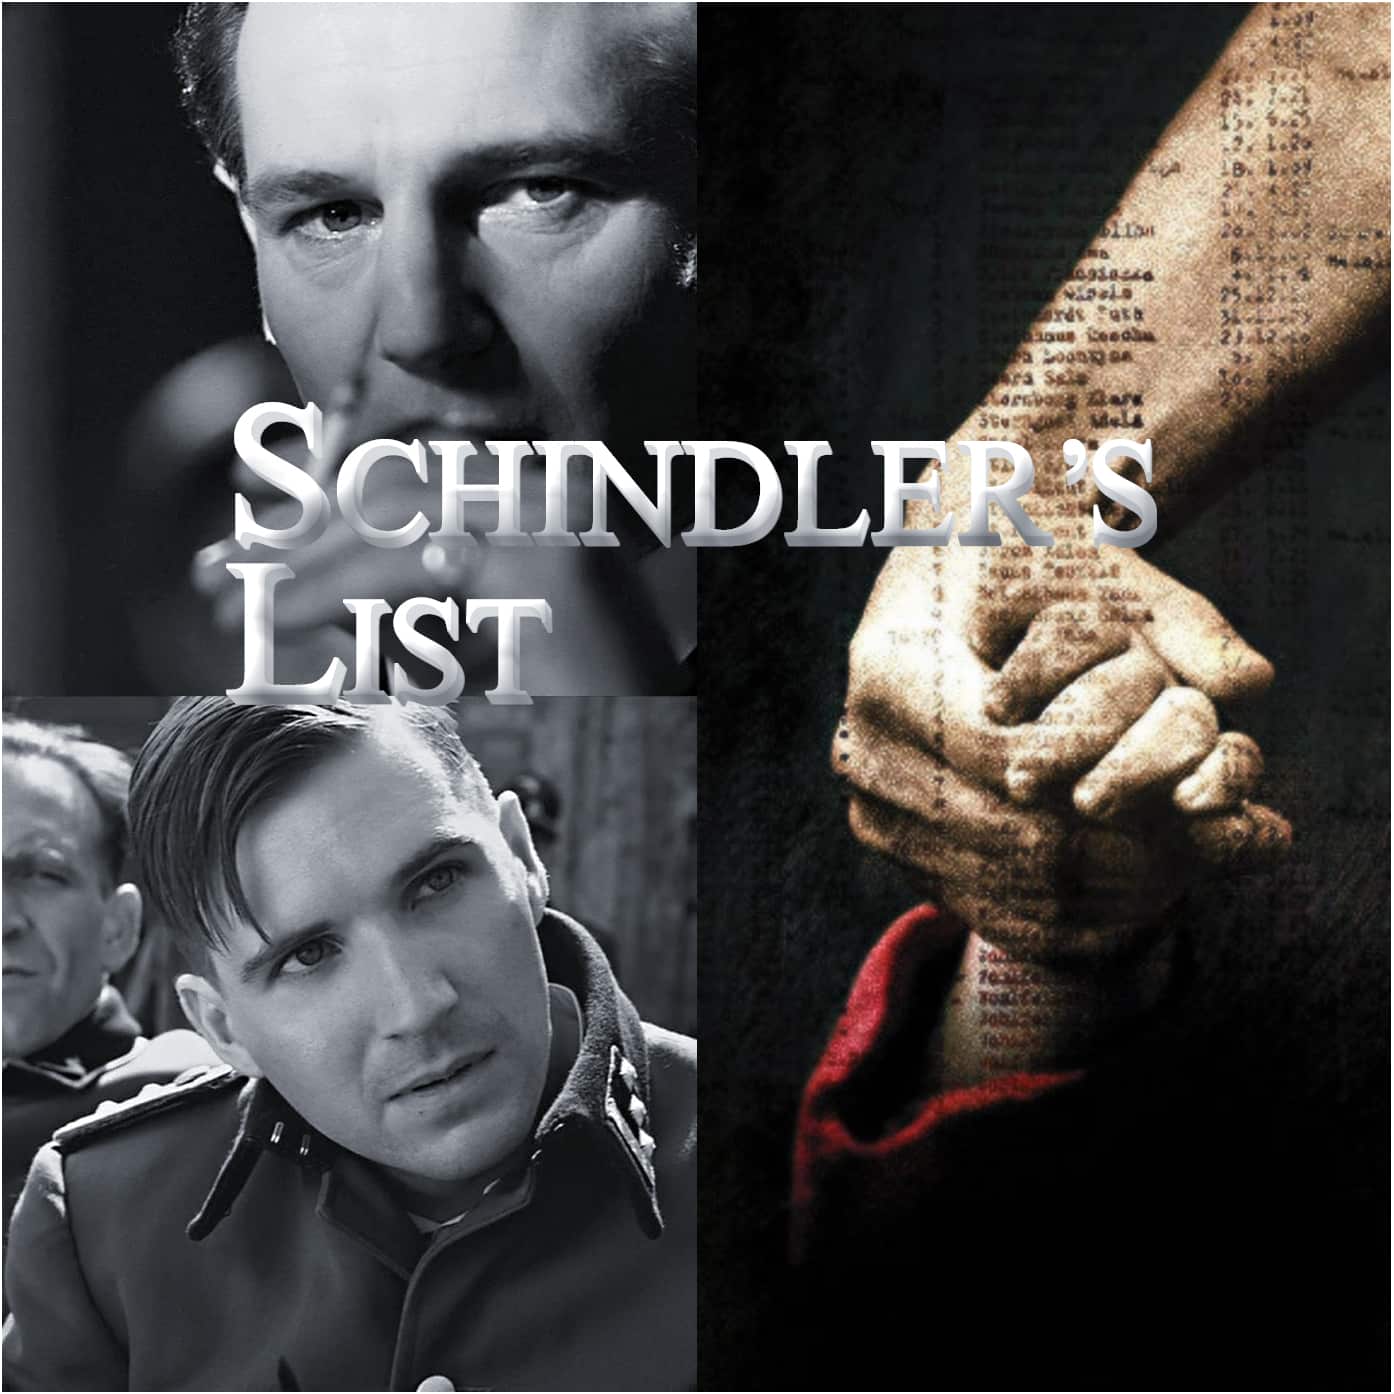 essay on the movie schindler's list